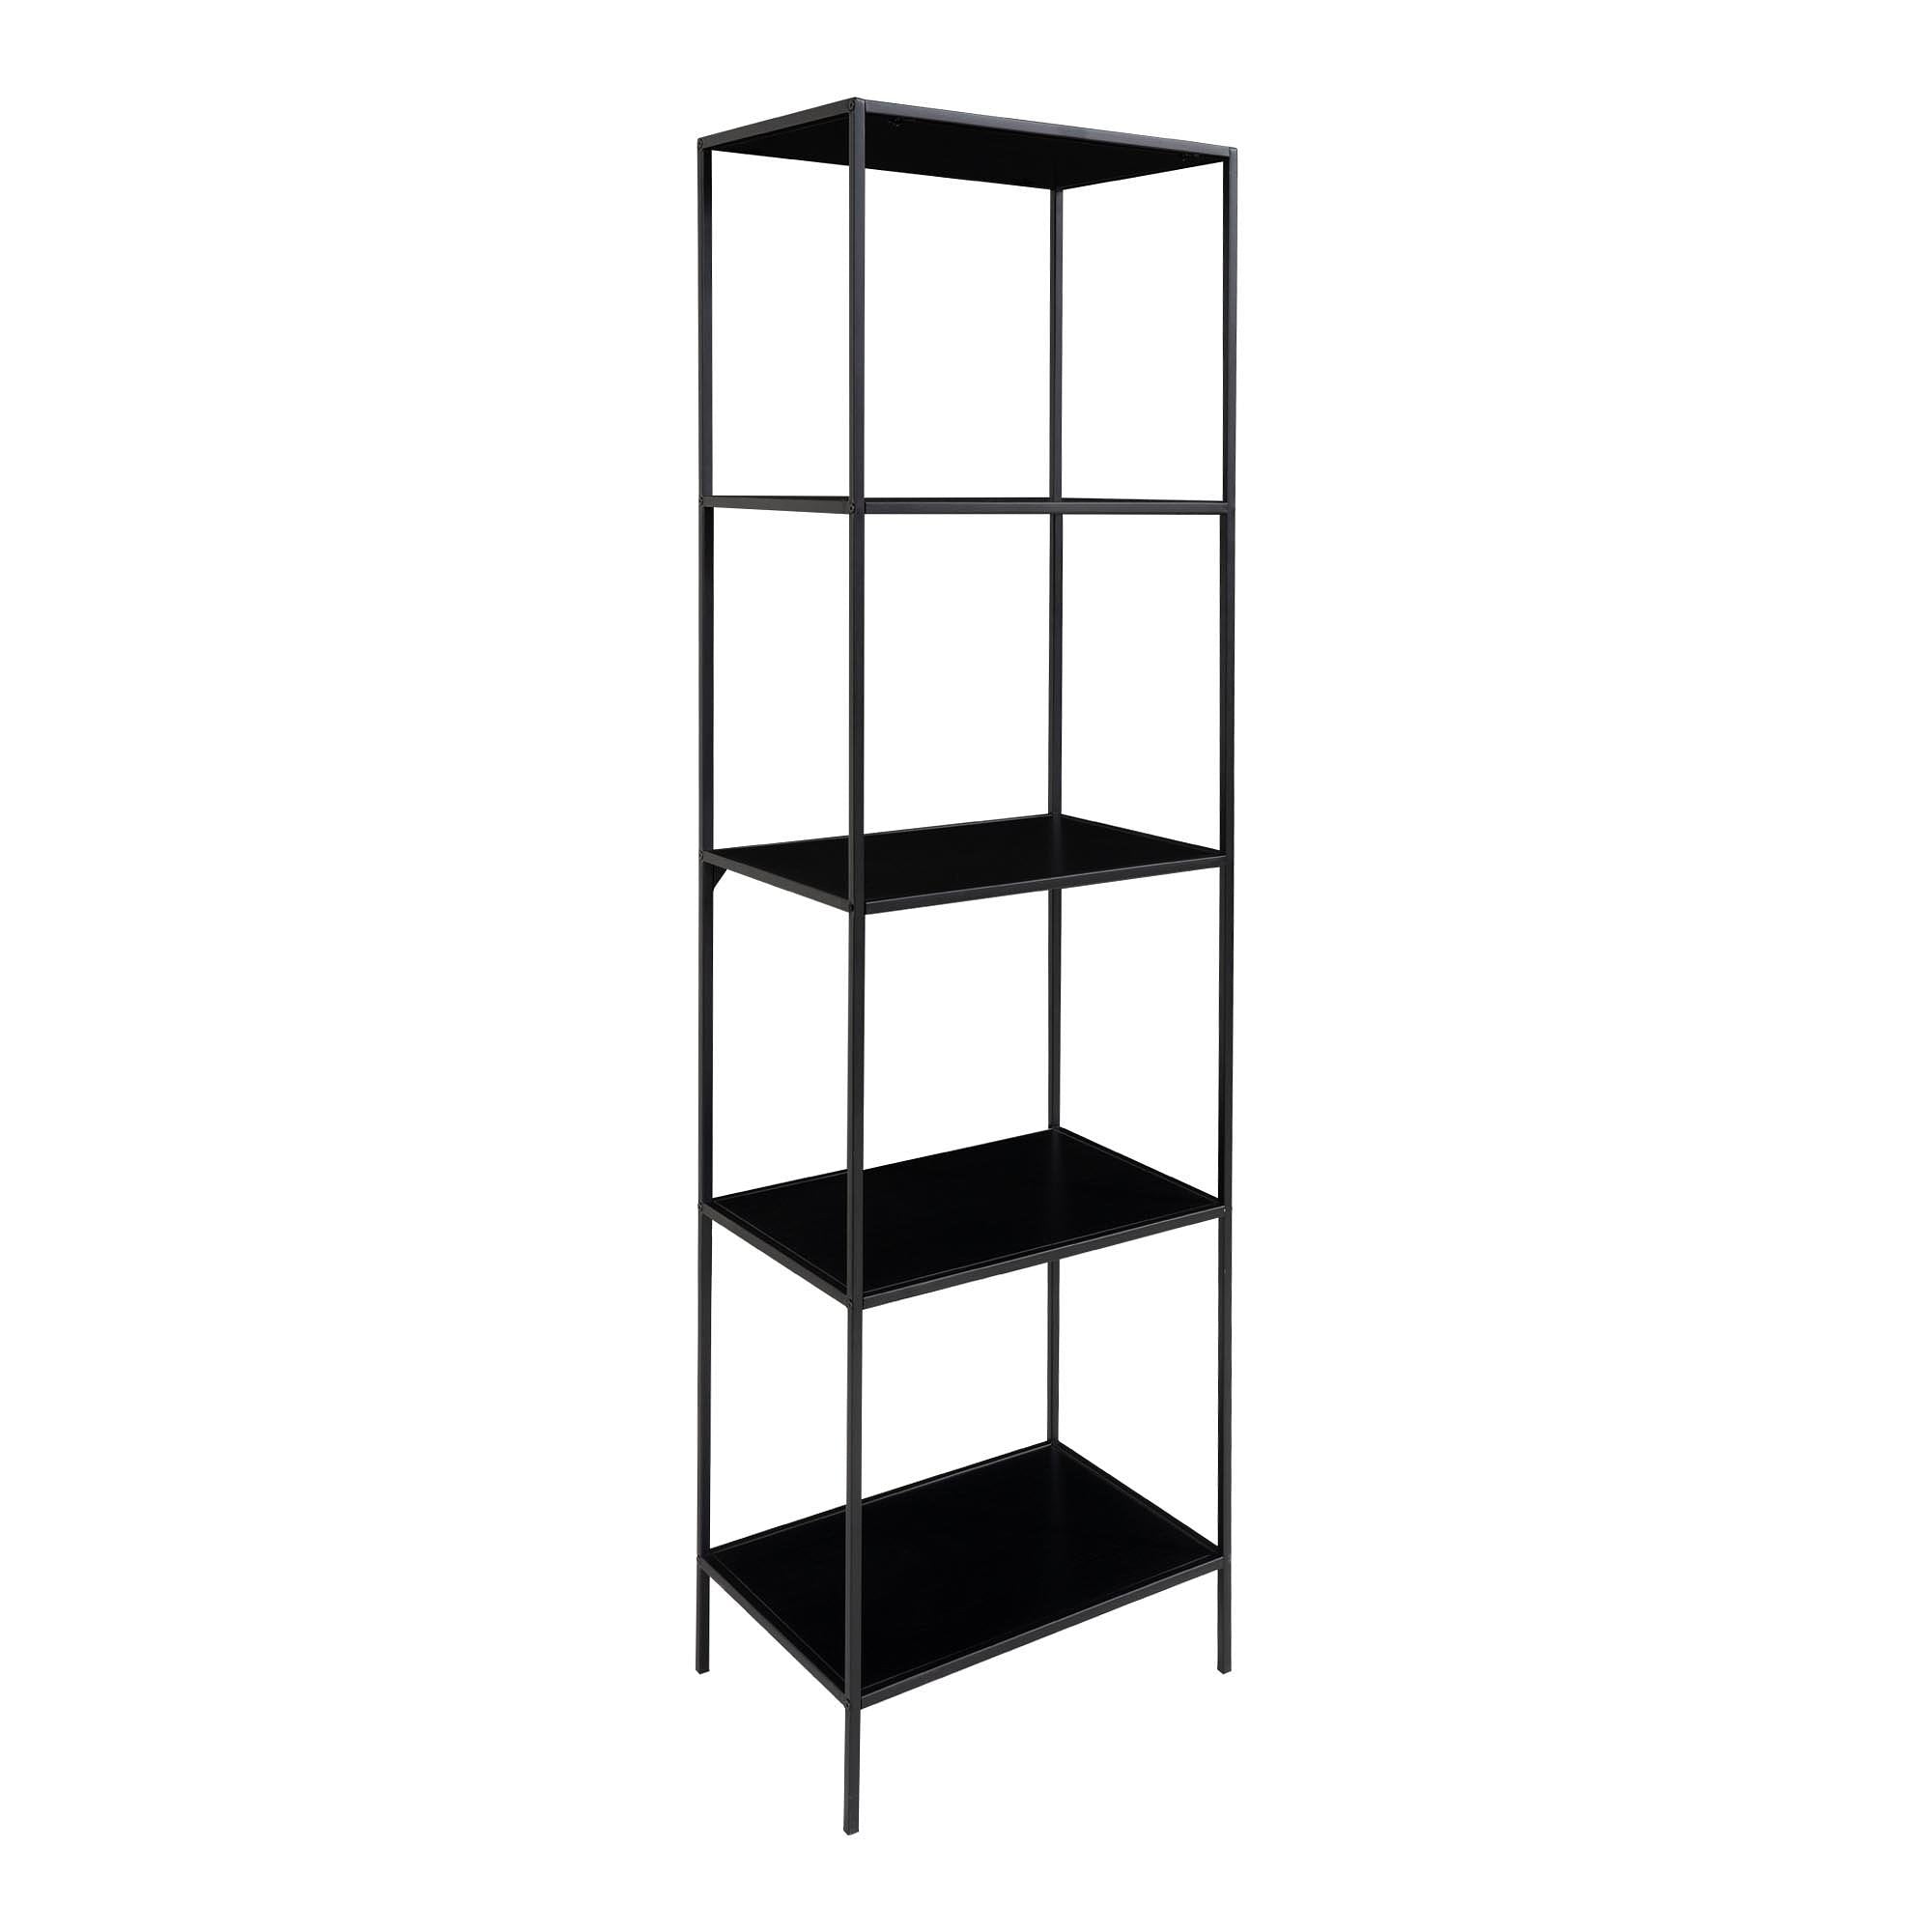 Vita Shelf - Shelf With Black Frame And 5 Black Shelves 51x36x170 Cm